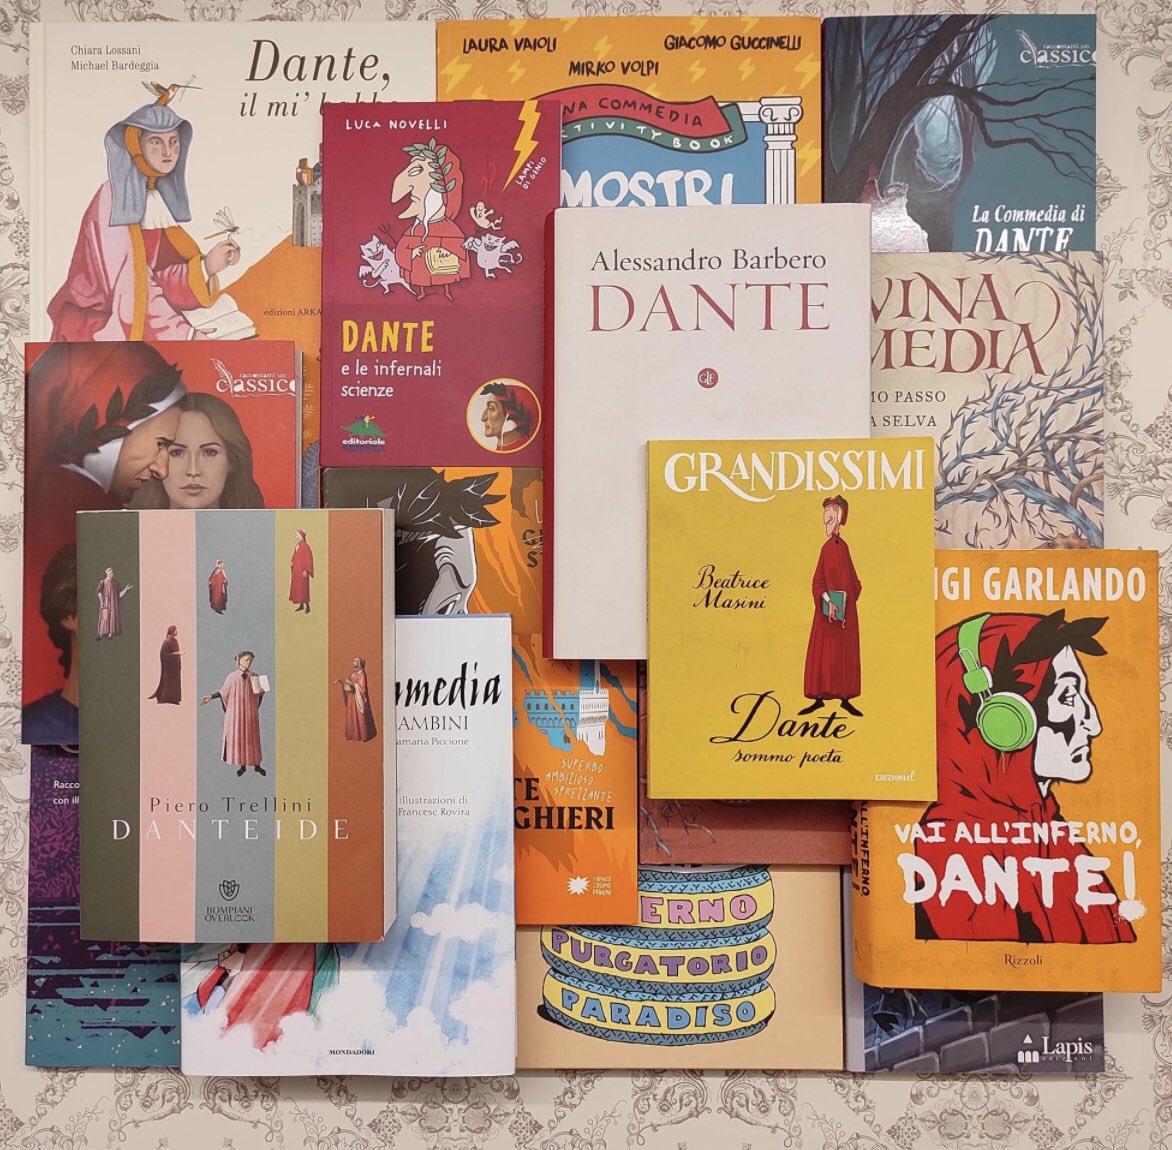 Raccontare ai bambini la vita di Dante. La libreria La Casa sull’albero di Arezzo nel settecentenario della morte del poeta sta popolando gli scaffali di albi, romanzi, fumetti sulla vita e l’opera del #sommoPoeta. Splendida iniziativa.
#Dantedi #25marzo